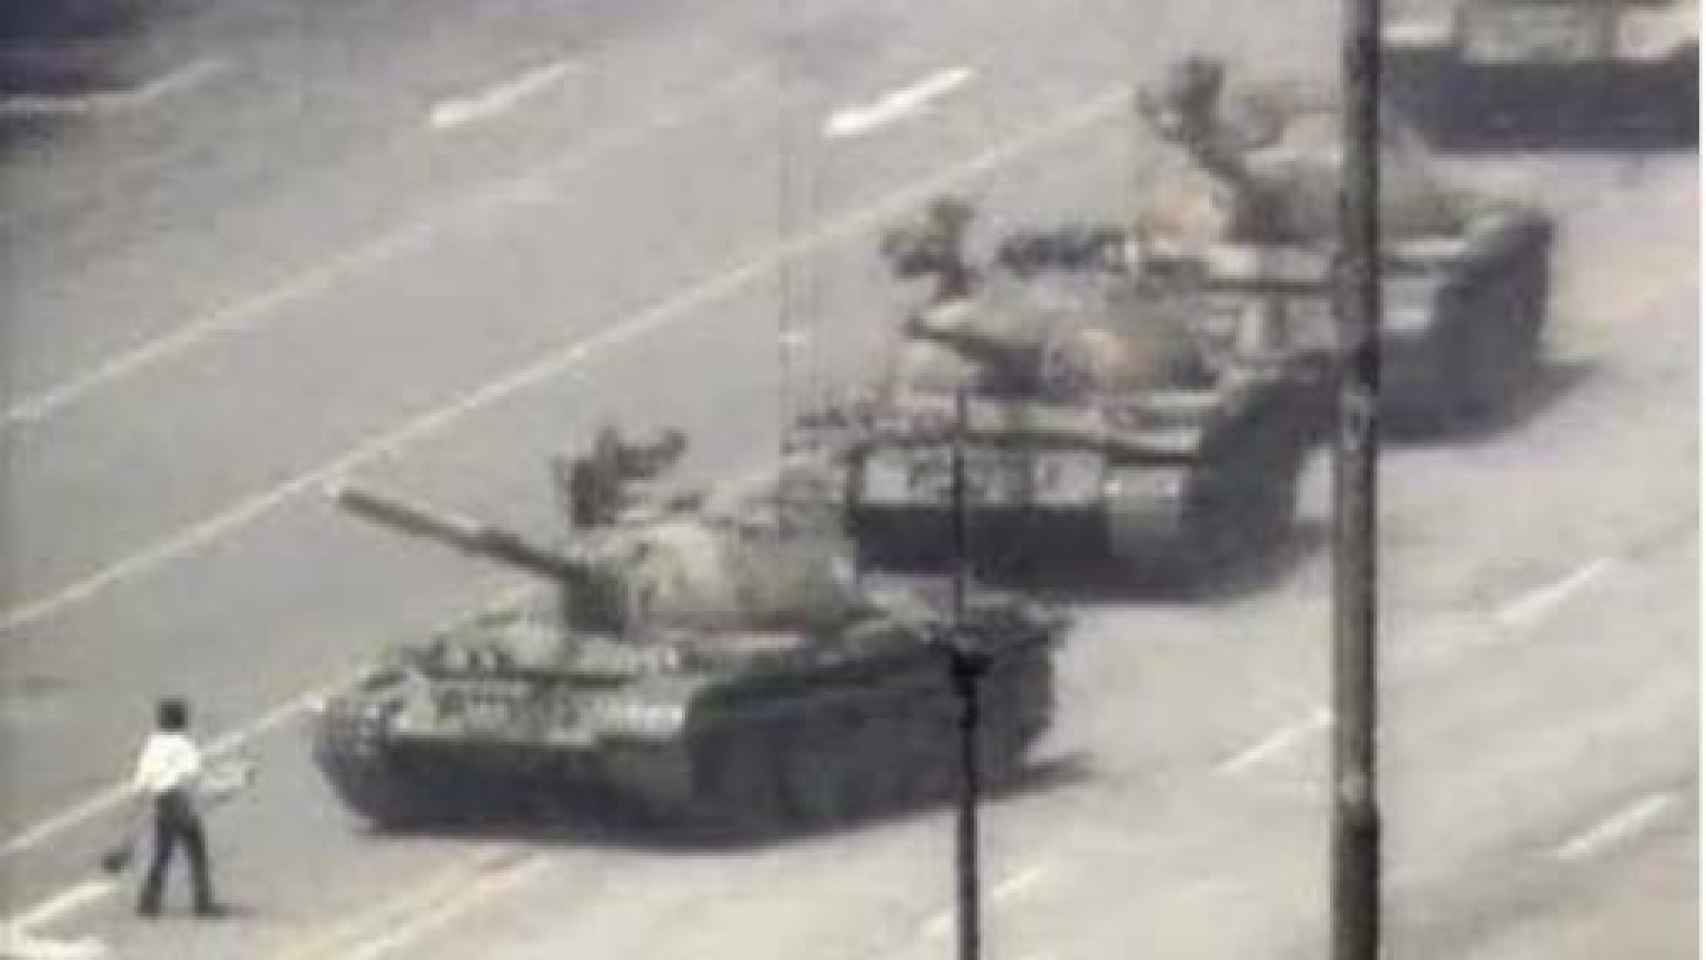 Imagen de los tanques en la plaza de Tiananmen de Pekín en 1989 que Assange ha utilizado para ilustrar su tuit sobre cataluña.